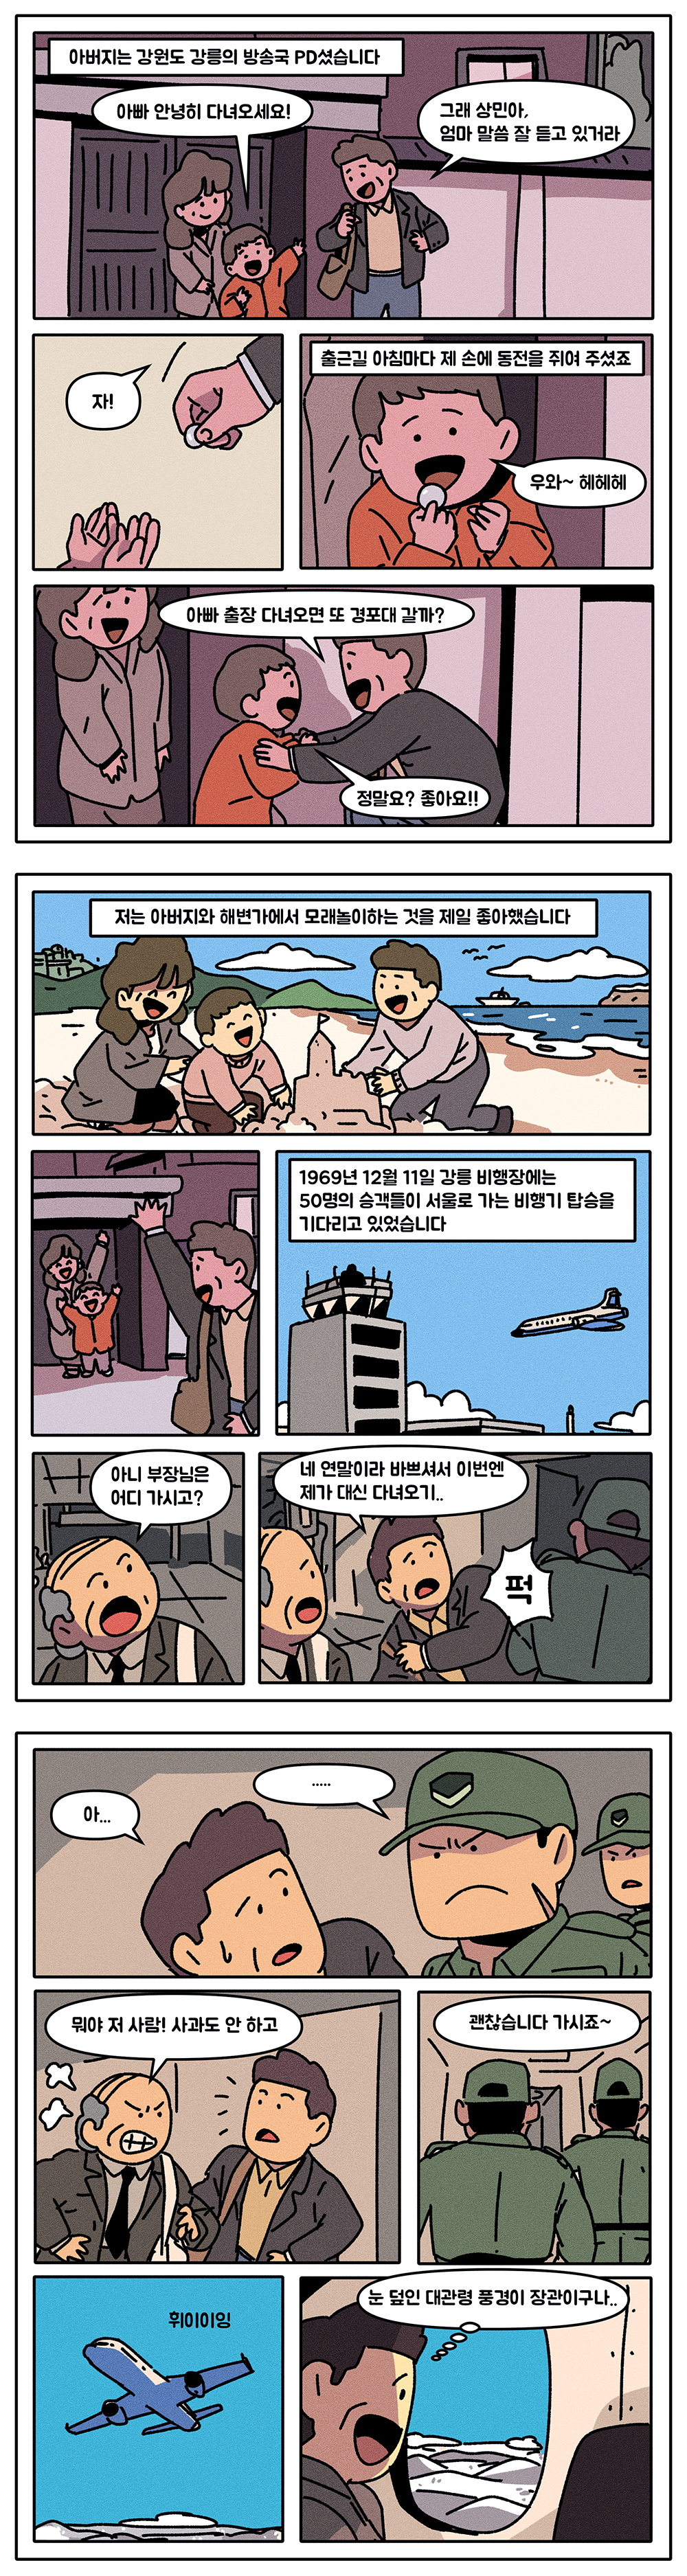 통일웹툰 시리즈 - KAL기 납북사건